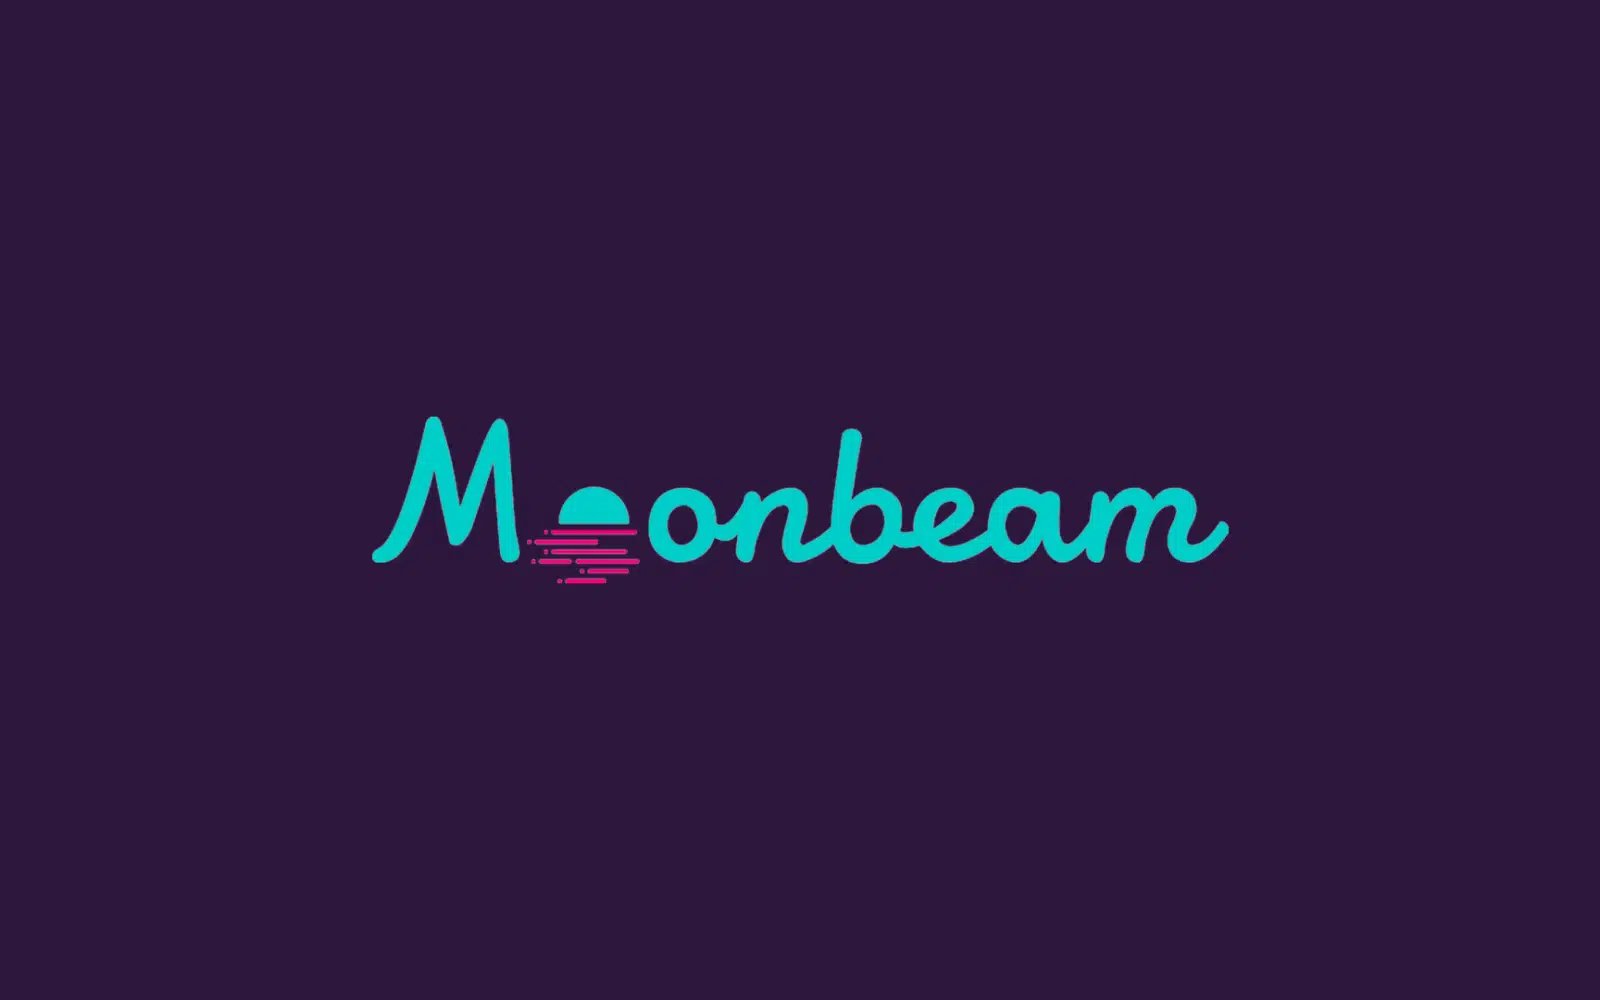 A Moonbeam consegue conectar diferentes blockchains e tornar as transações entre as redes mais seguras e eficientes.